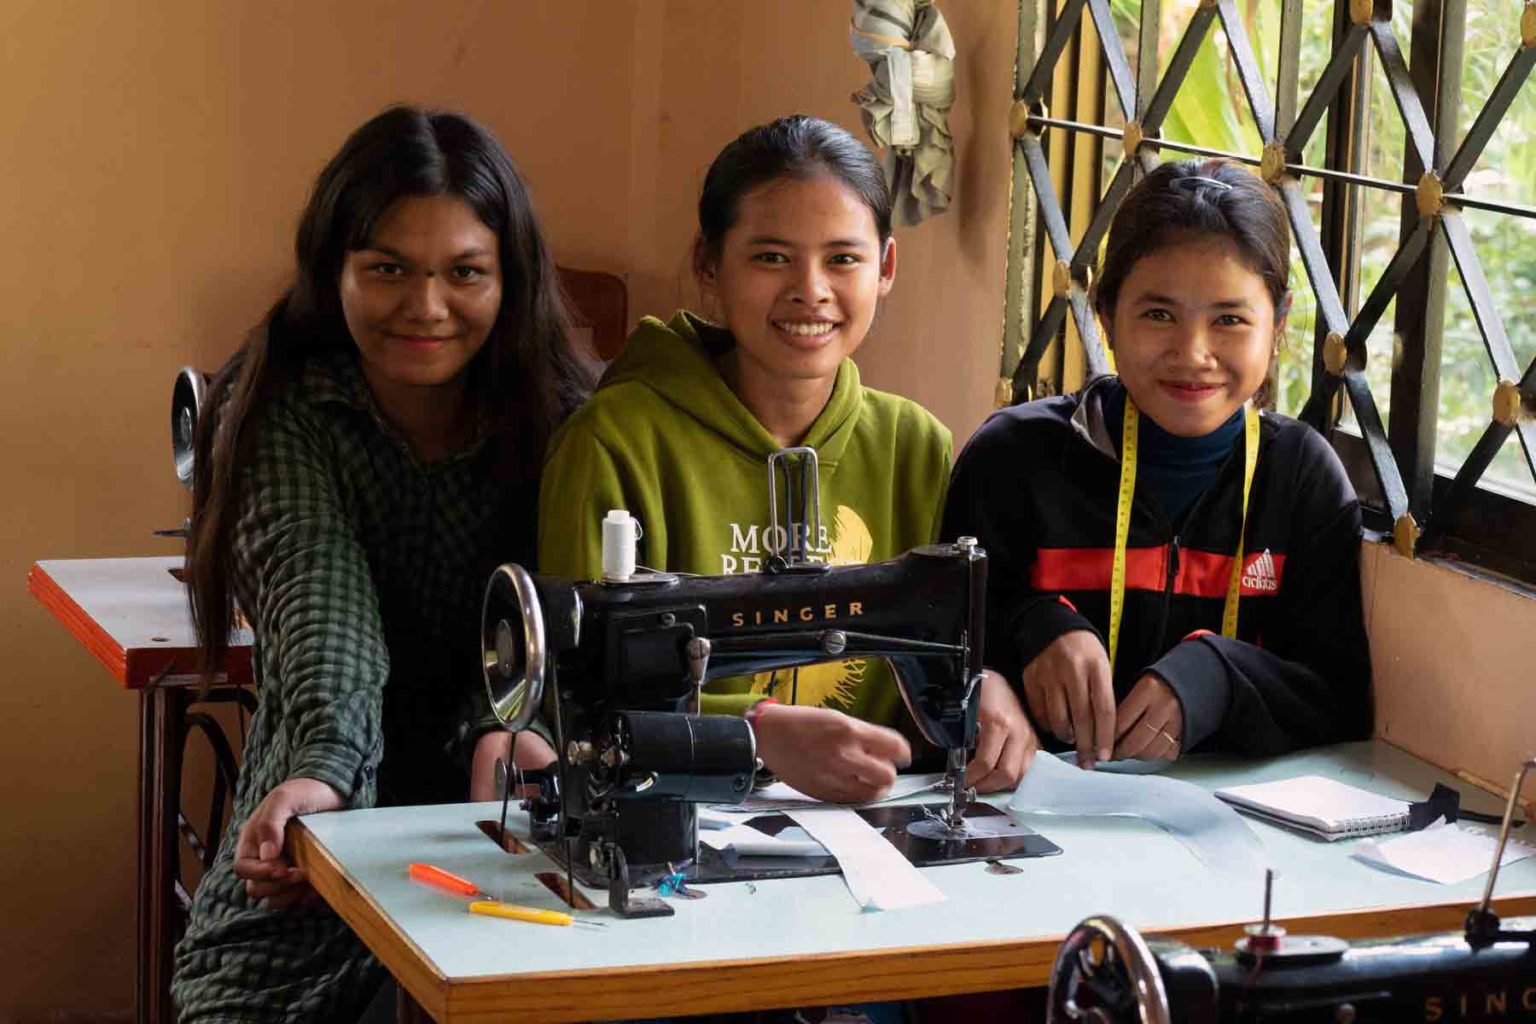 Trois jeunes étudiantes stylistes-couturières qui pendant une année apprennent gratuitement un métier qui changera durablement le destin de leurs vies